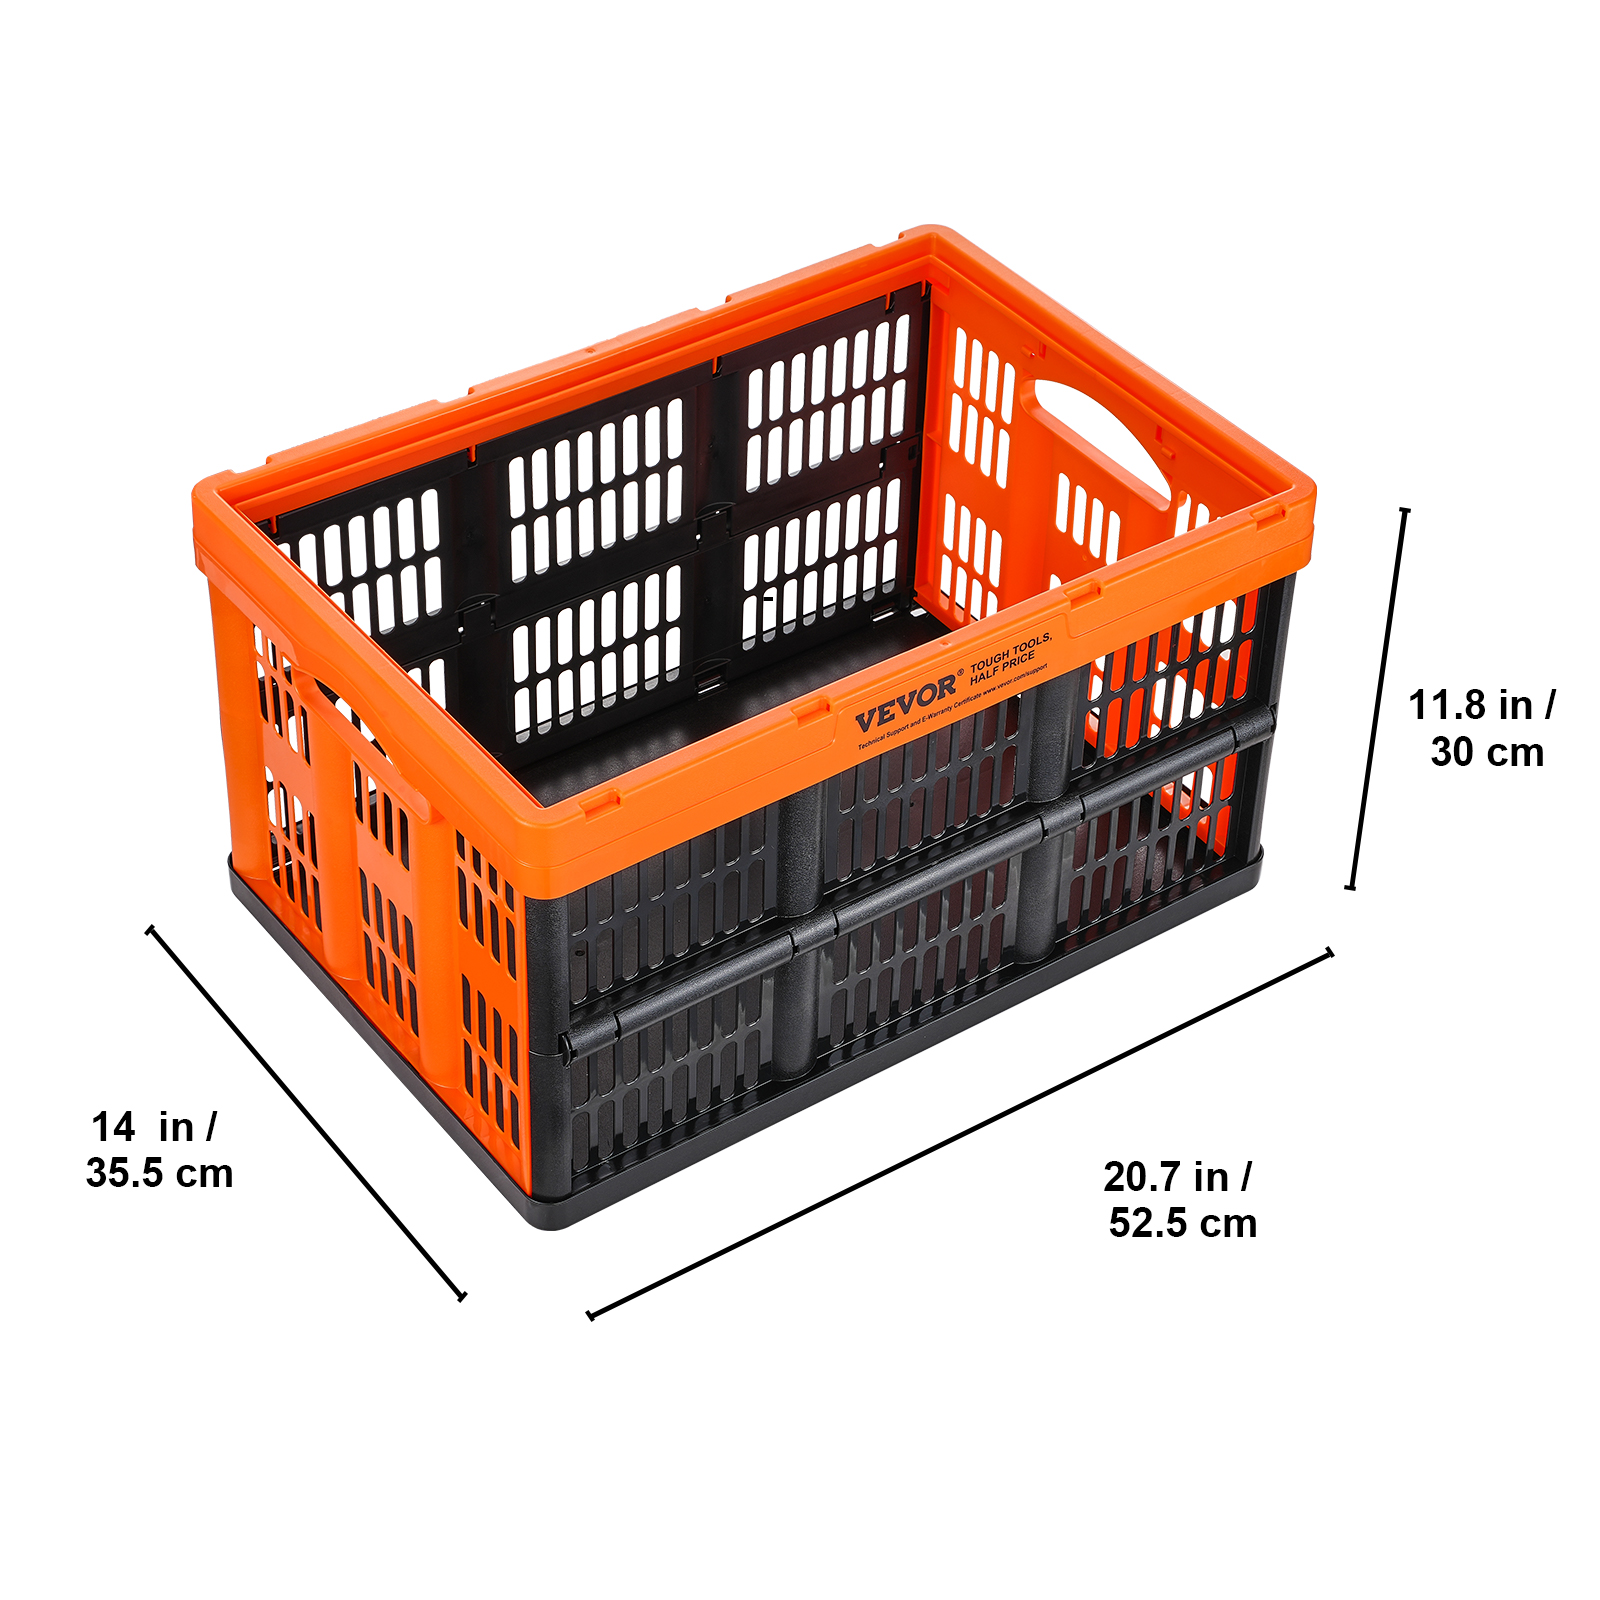 für mit Aufbewahrungsbox Transportbox Stapelbare Stapelboxen VEVOR 45L Faltboxen 3er-Set Aufbewahrung Orange Profi Faltbarer & Klappbox PP Handgriff Box Transport Storage Kisten aus